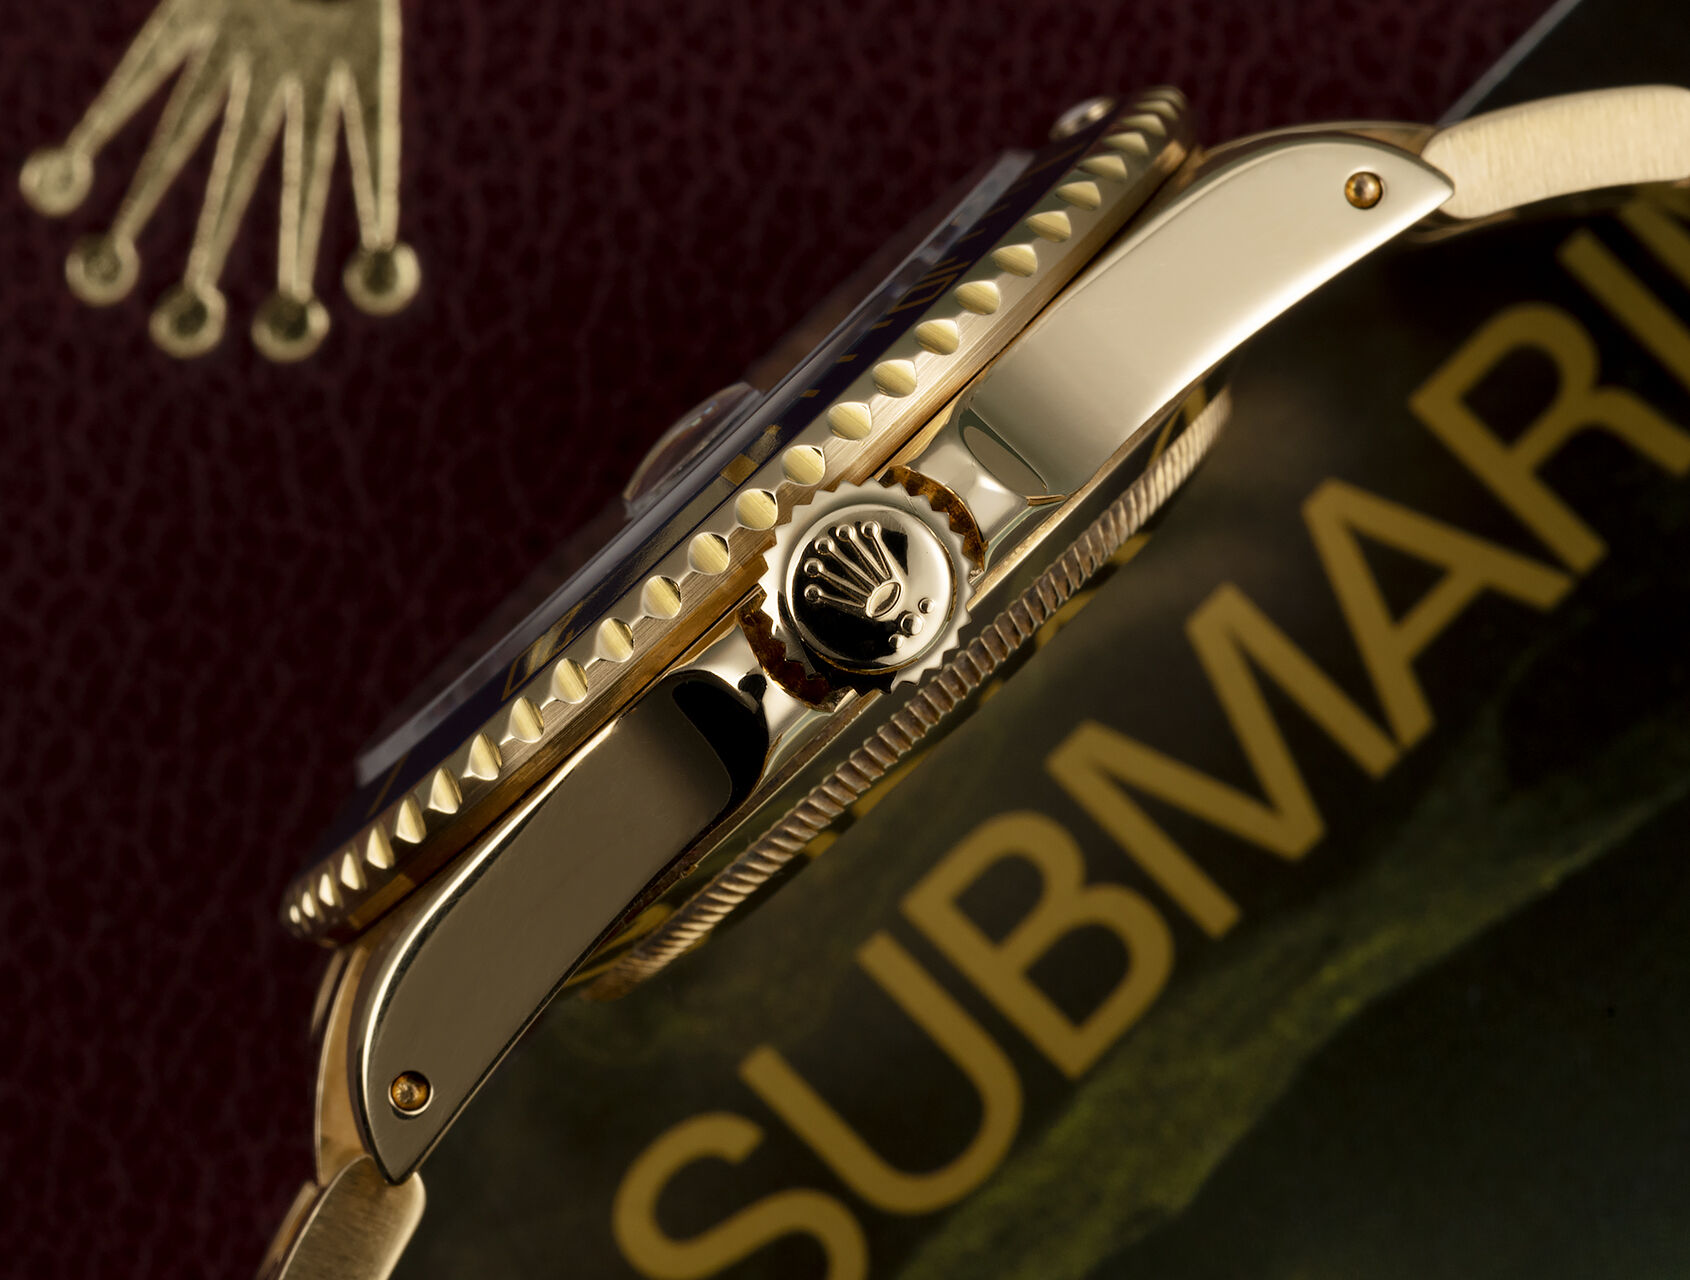 ref 16618 | Serviced by Rolex | Rolex Submariner Date